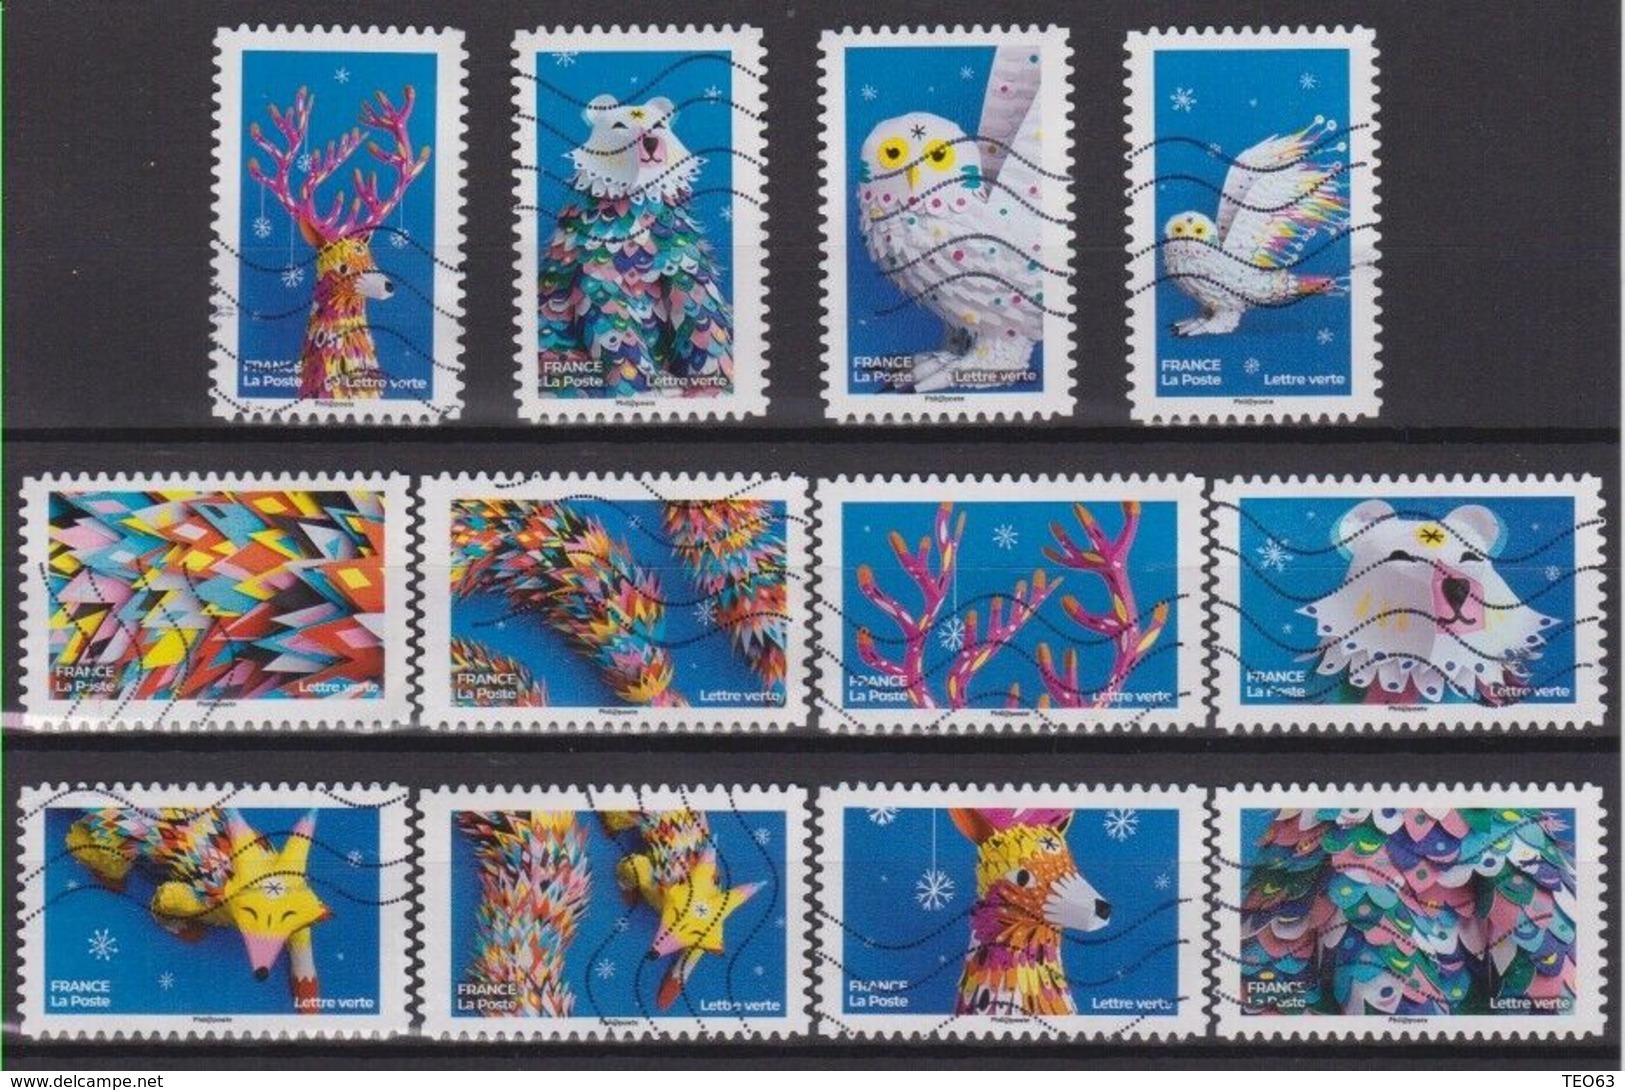 SÉRIE COMPLÈTE 12 TIMBRES 2019 FANTASTIQUE - Used Stamps